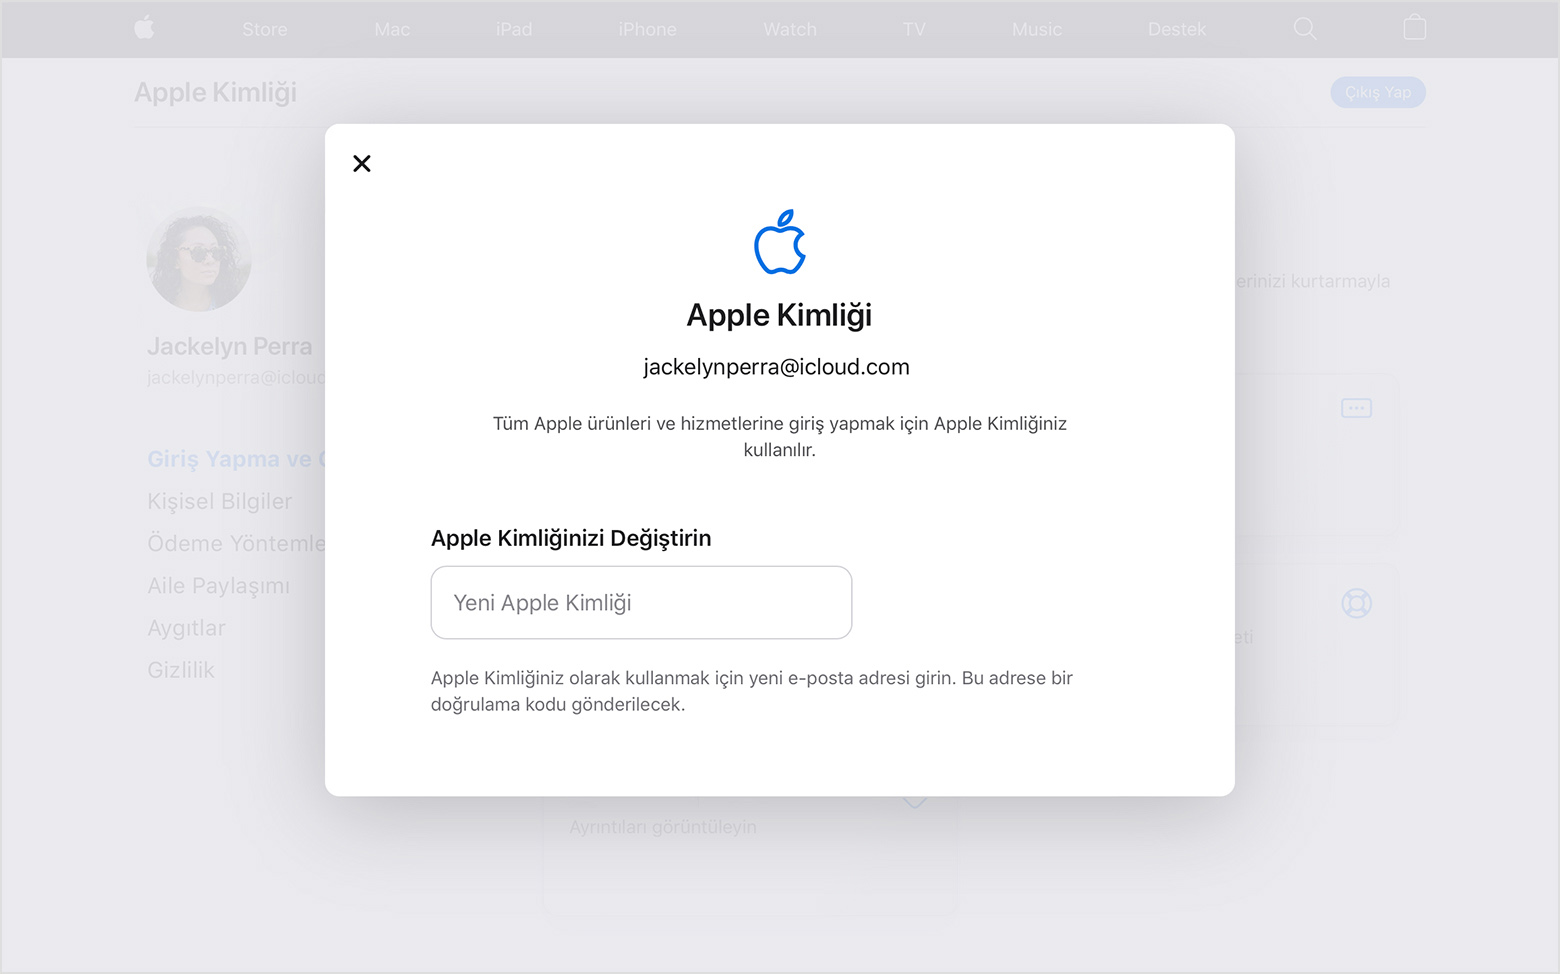 Apple Kimliğinizi değiştirme - Apple Destek (TR)